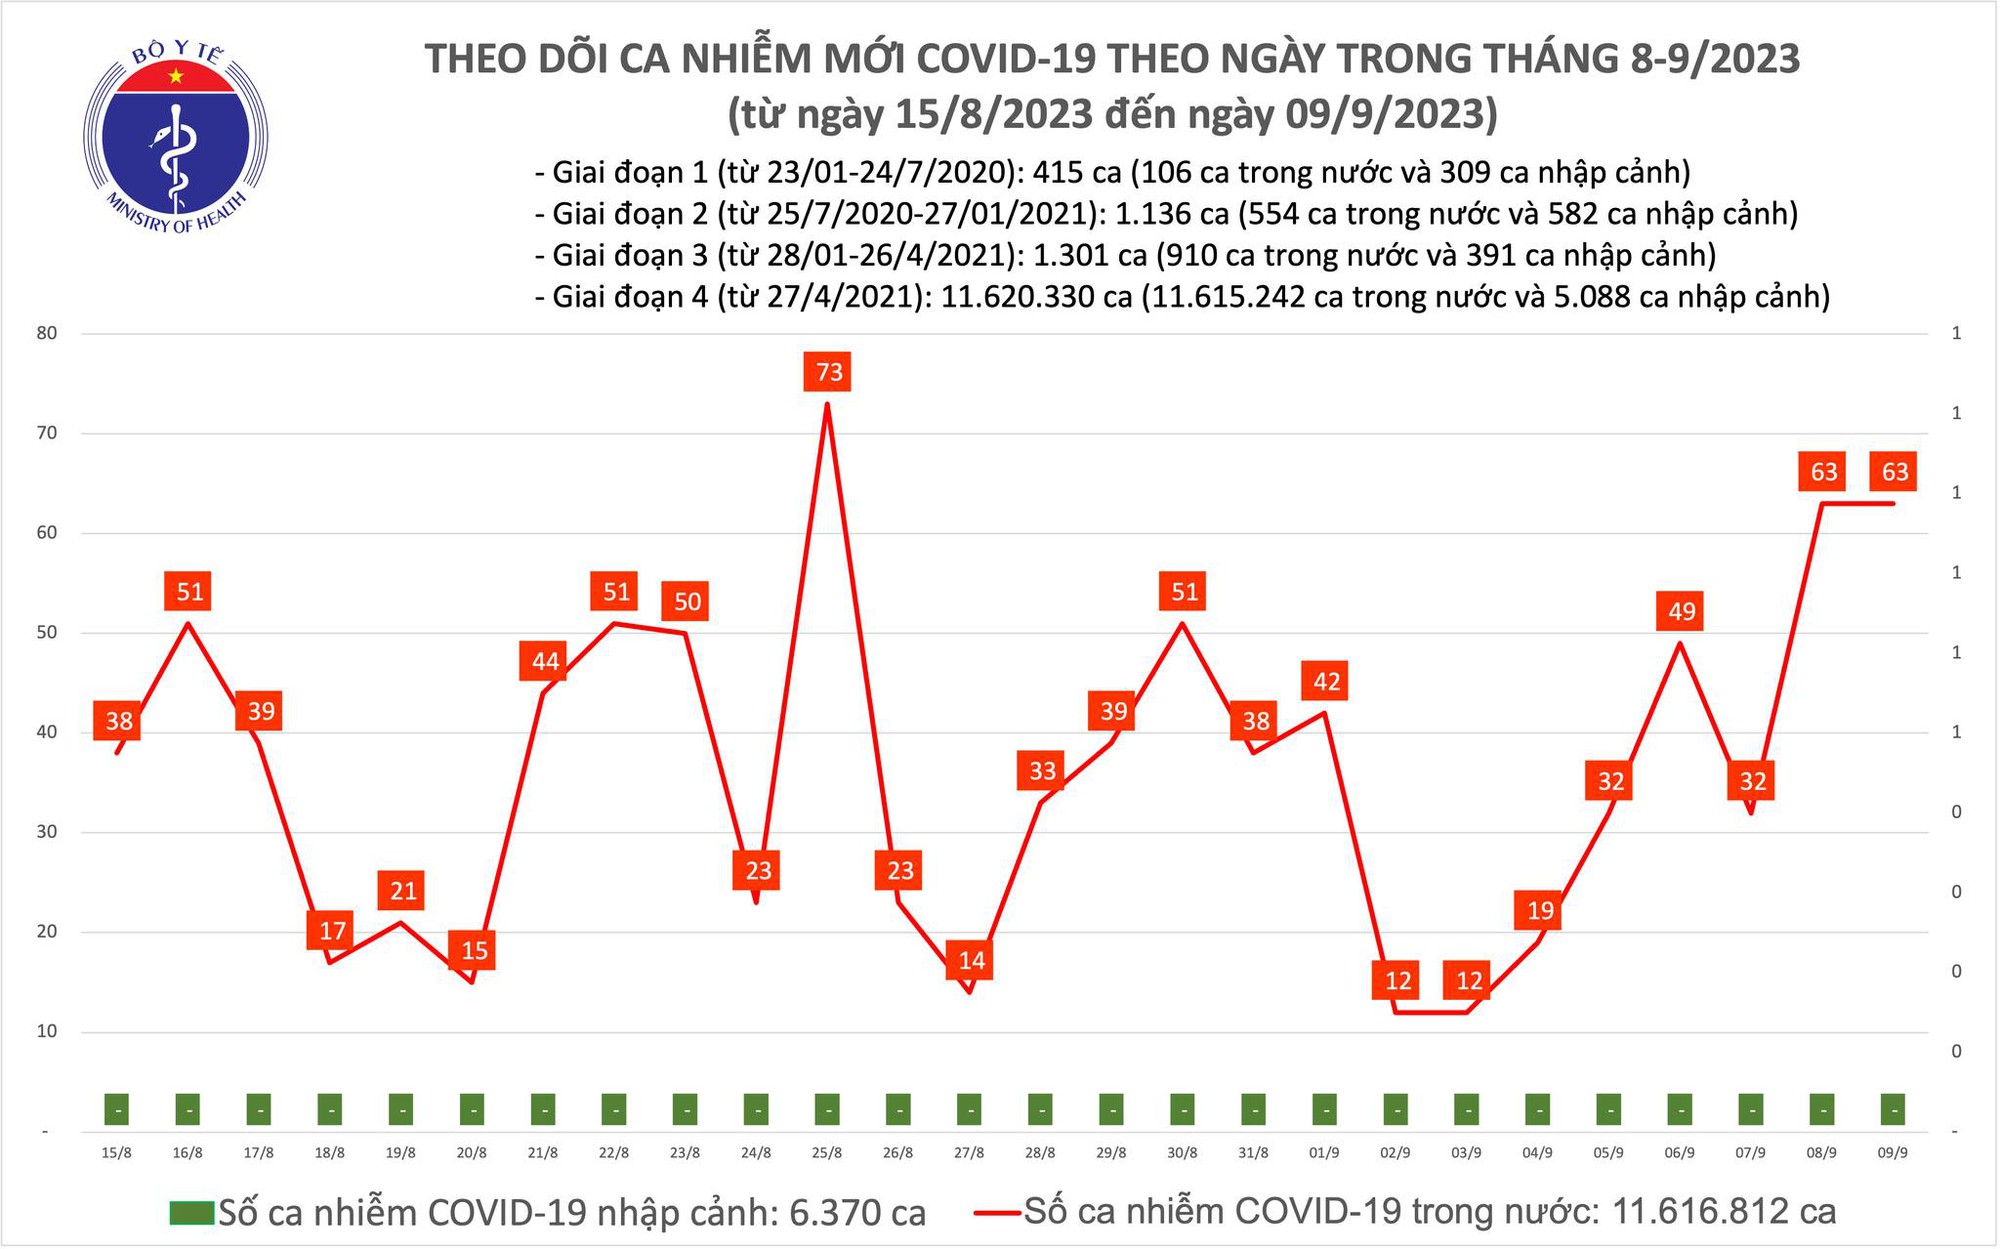 Ngày 9/9: Có 63 ca COVID-19 mới, bệnh nhân thở oxy tăng lên - Ảnh 1.